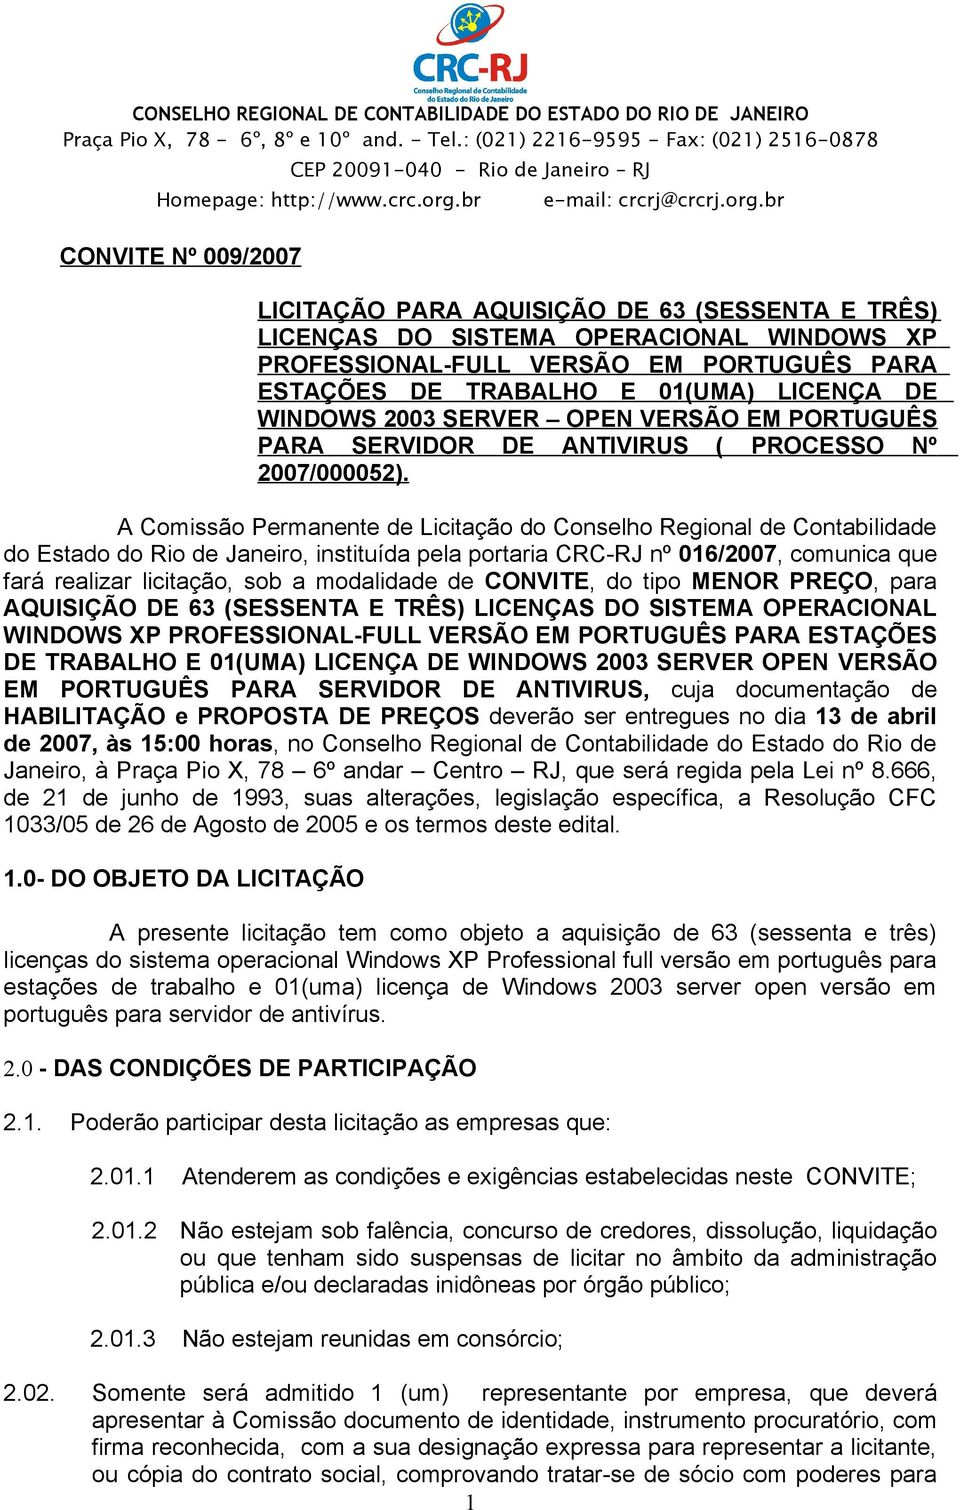 A Comissão Permanente de Licitação do Conselho Regional de Contabilidade do Estado do Rio de Janeiro, instituída pela portaria CRC-RJ nº 016/2007, comunica que fará realizar licitação, sob a